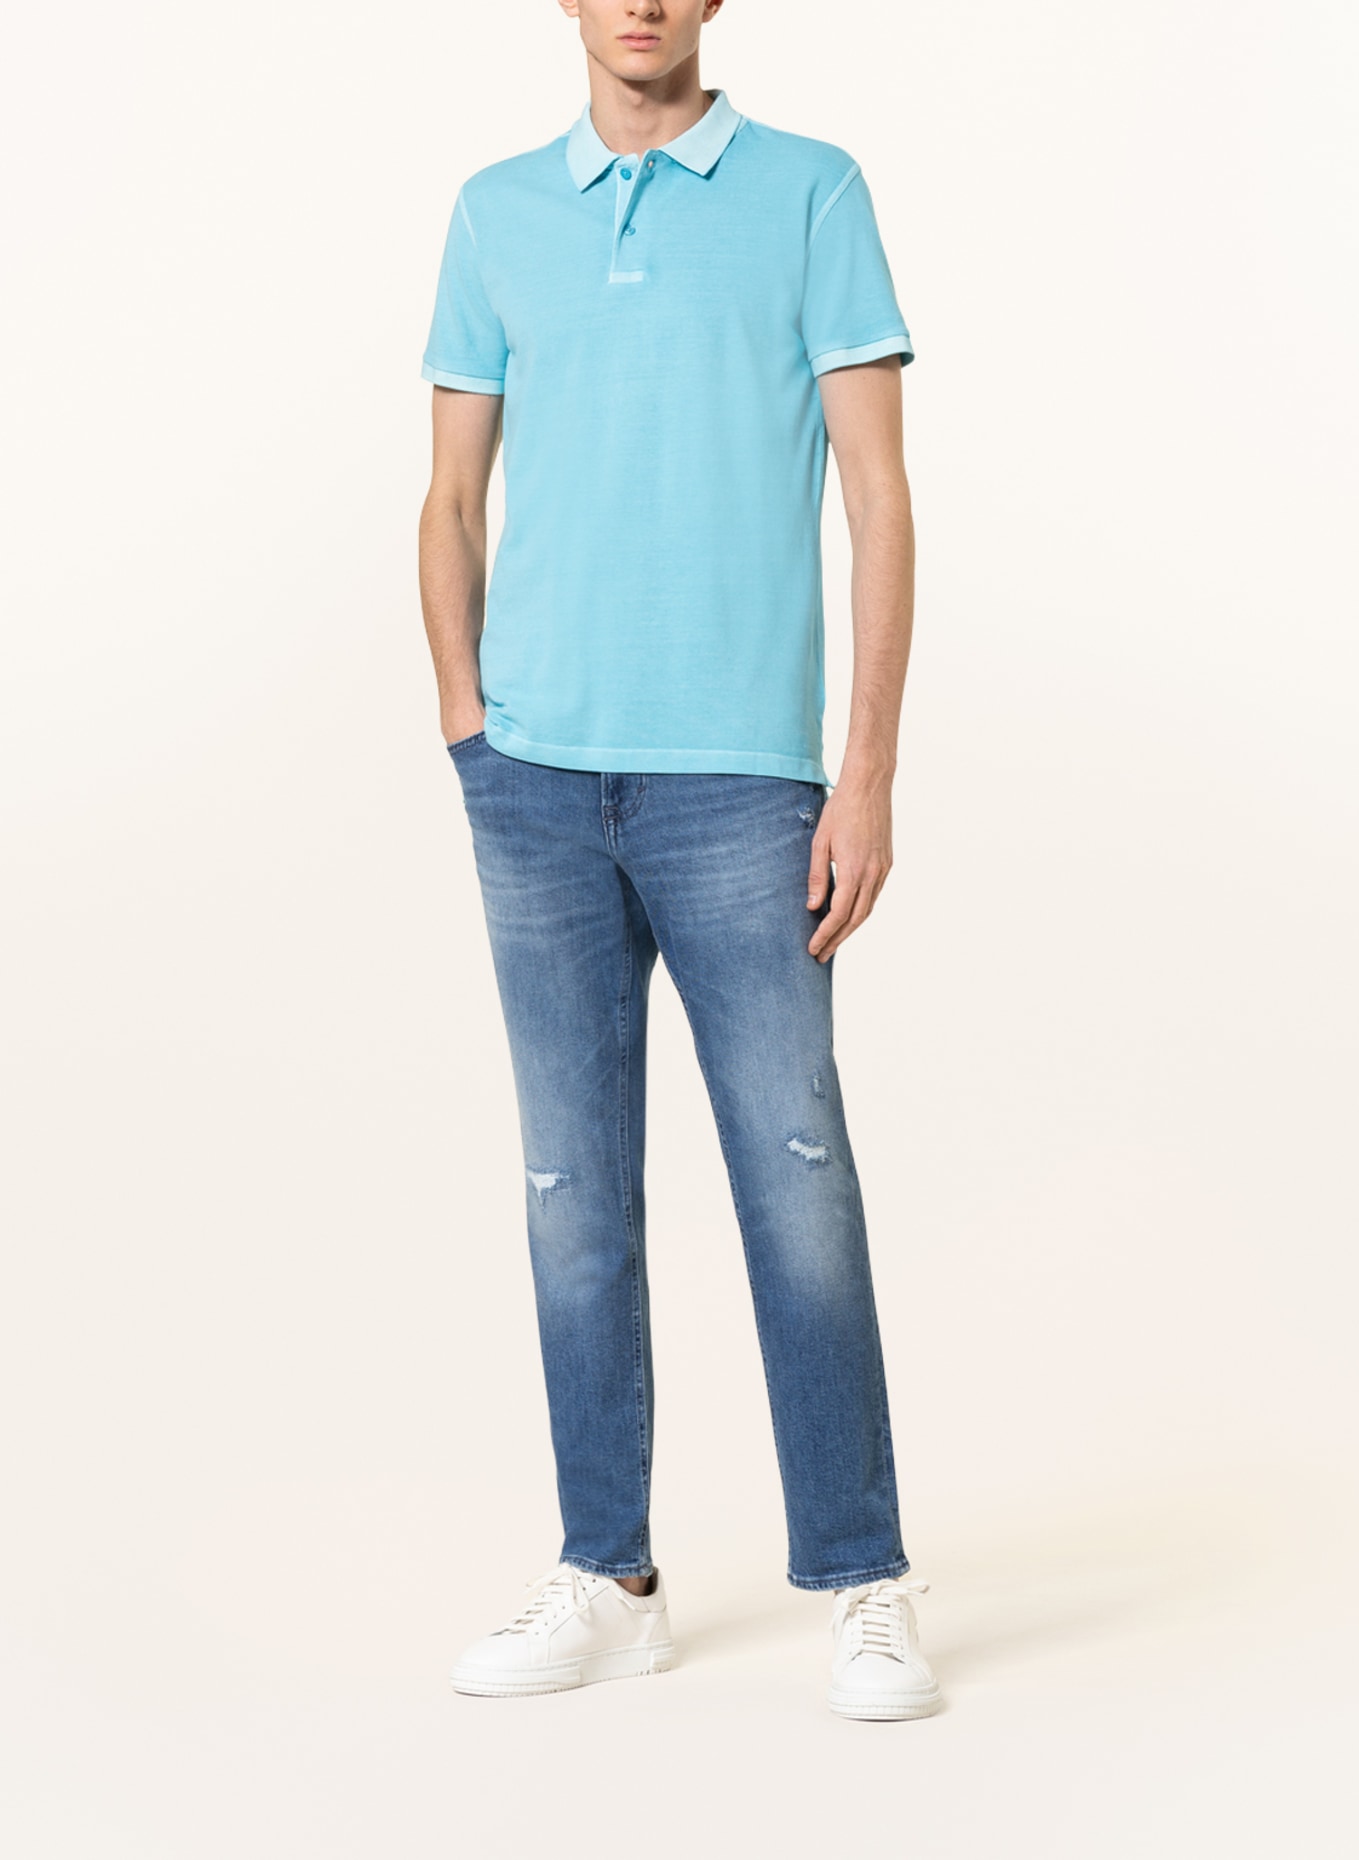 STROKESMAN'S Piqué polo shirt, Color: LIGHT BLUE (Image 2)